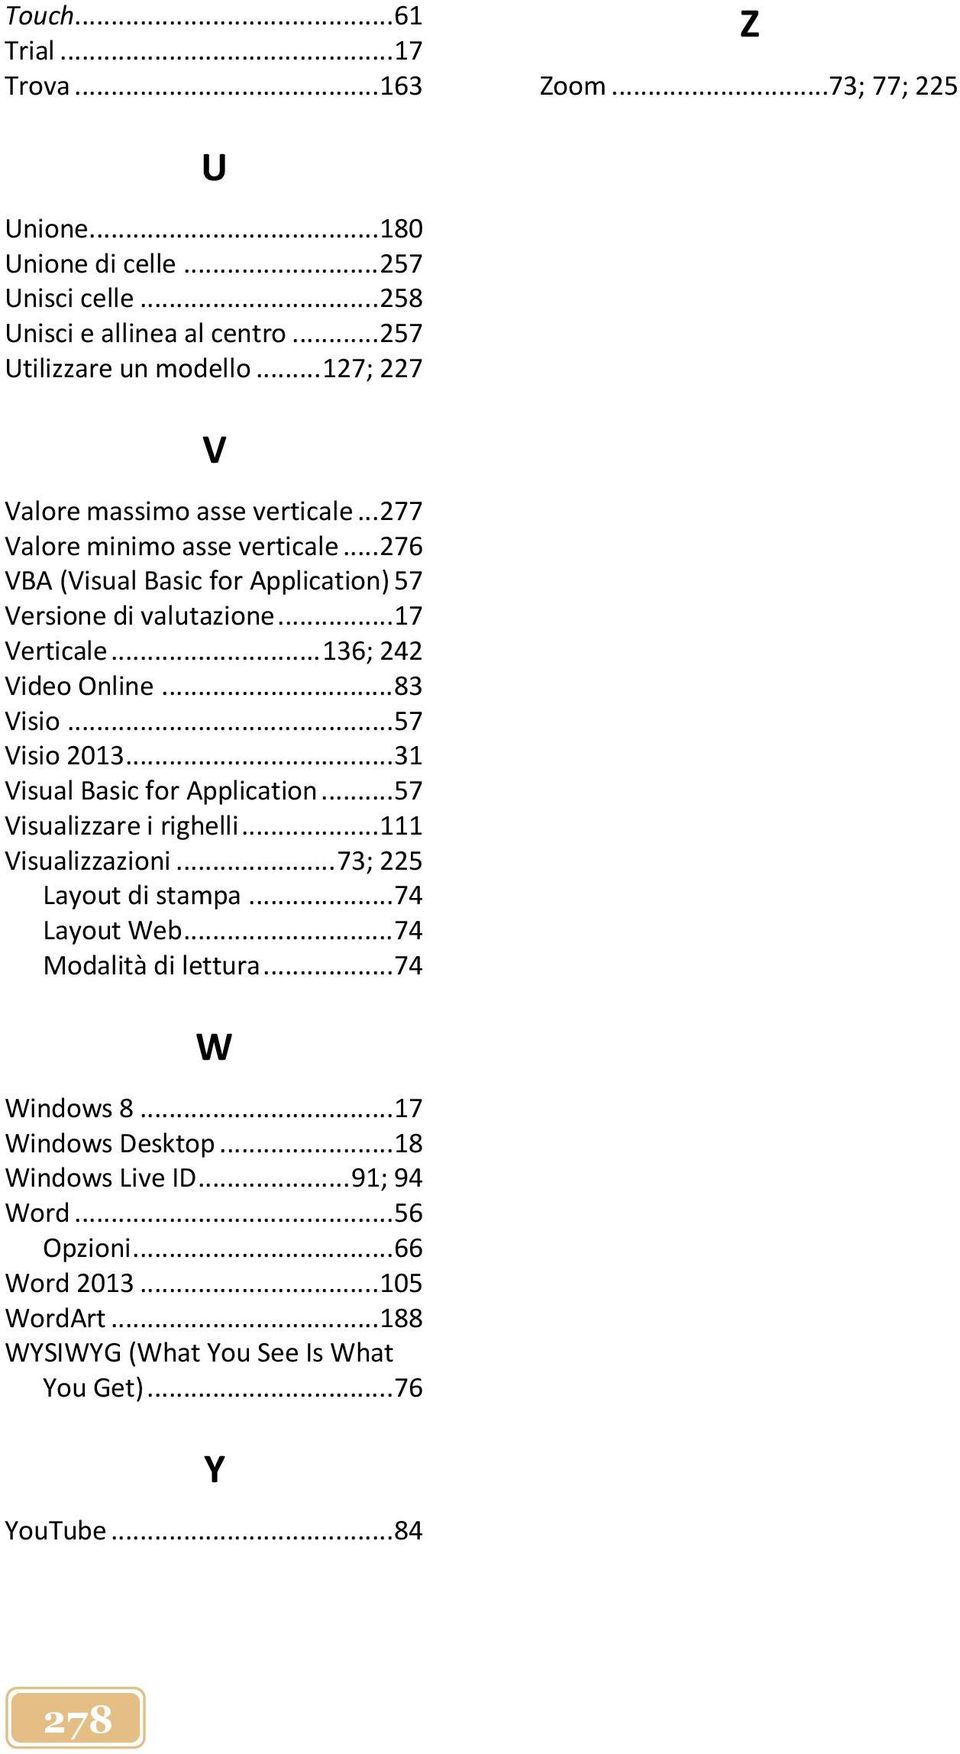 .. 136; 242 Video Online... 83 Visio... 57 Visio 2013... 31 Visual Basic for Application... 57 Visualizzare i righelli... 111 Visualizzazioni... 73; 225 Layout di stampa... 74 Layout Web.